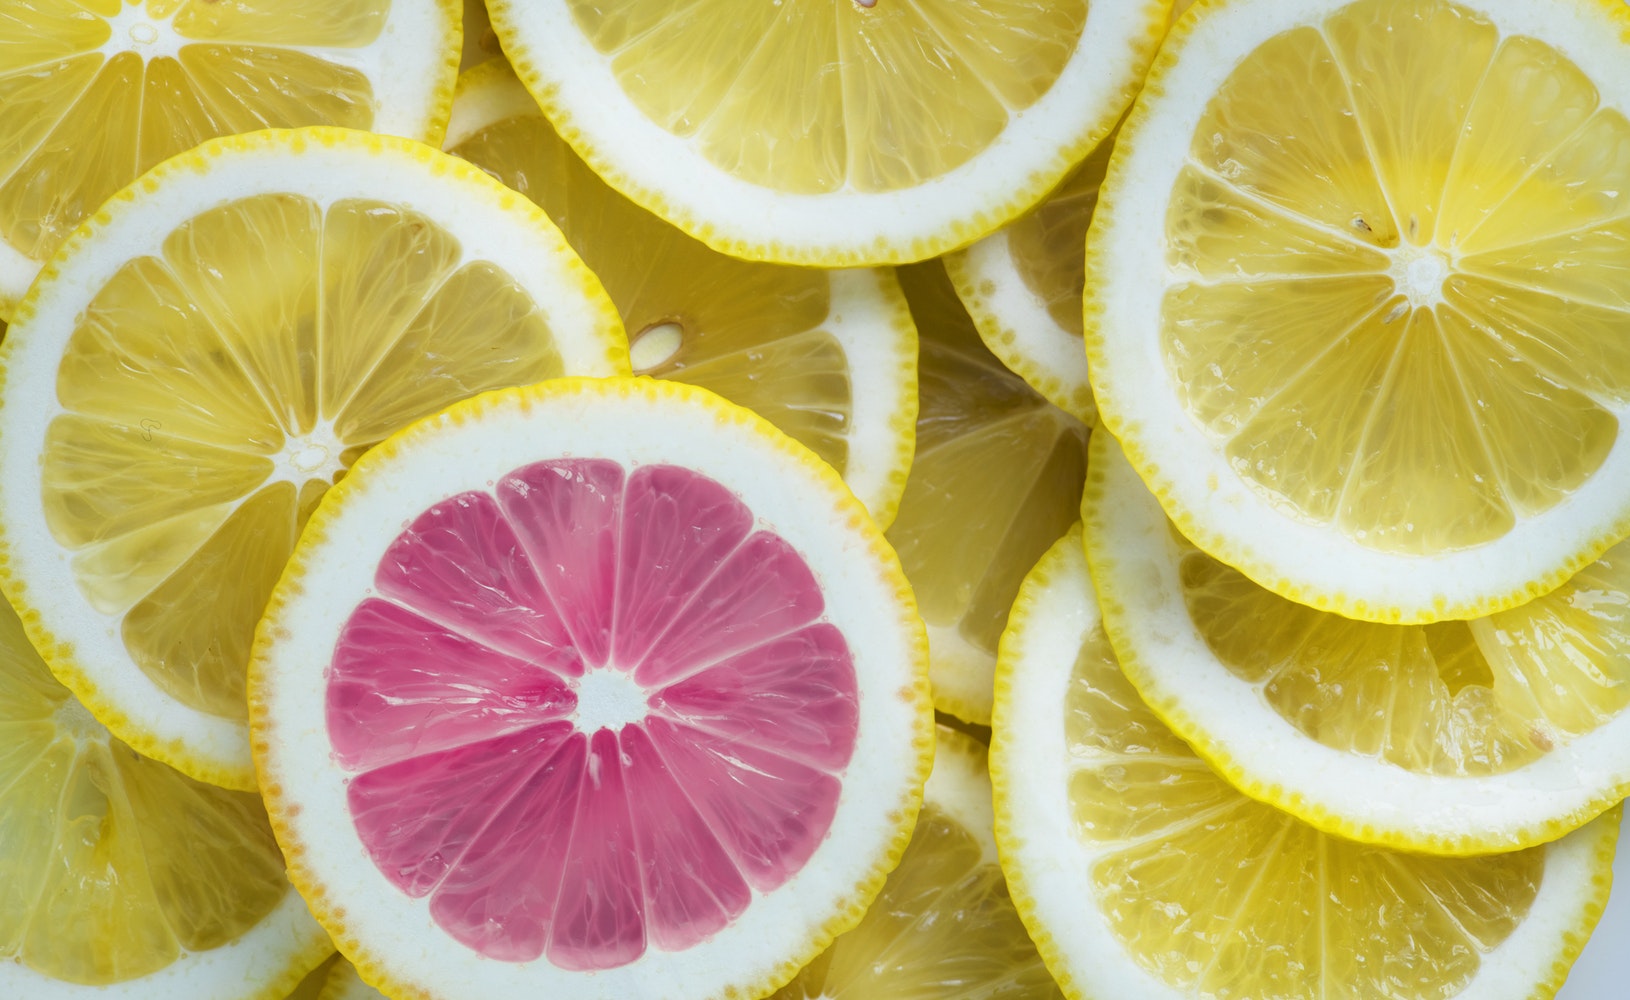 ENTITY shares LinkedIn profile tips. Photo of one pink lemon among many yellow lemons.